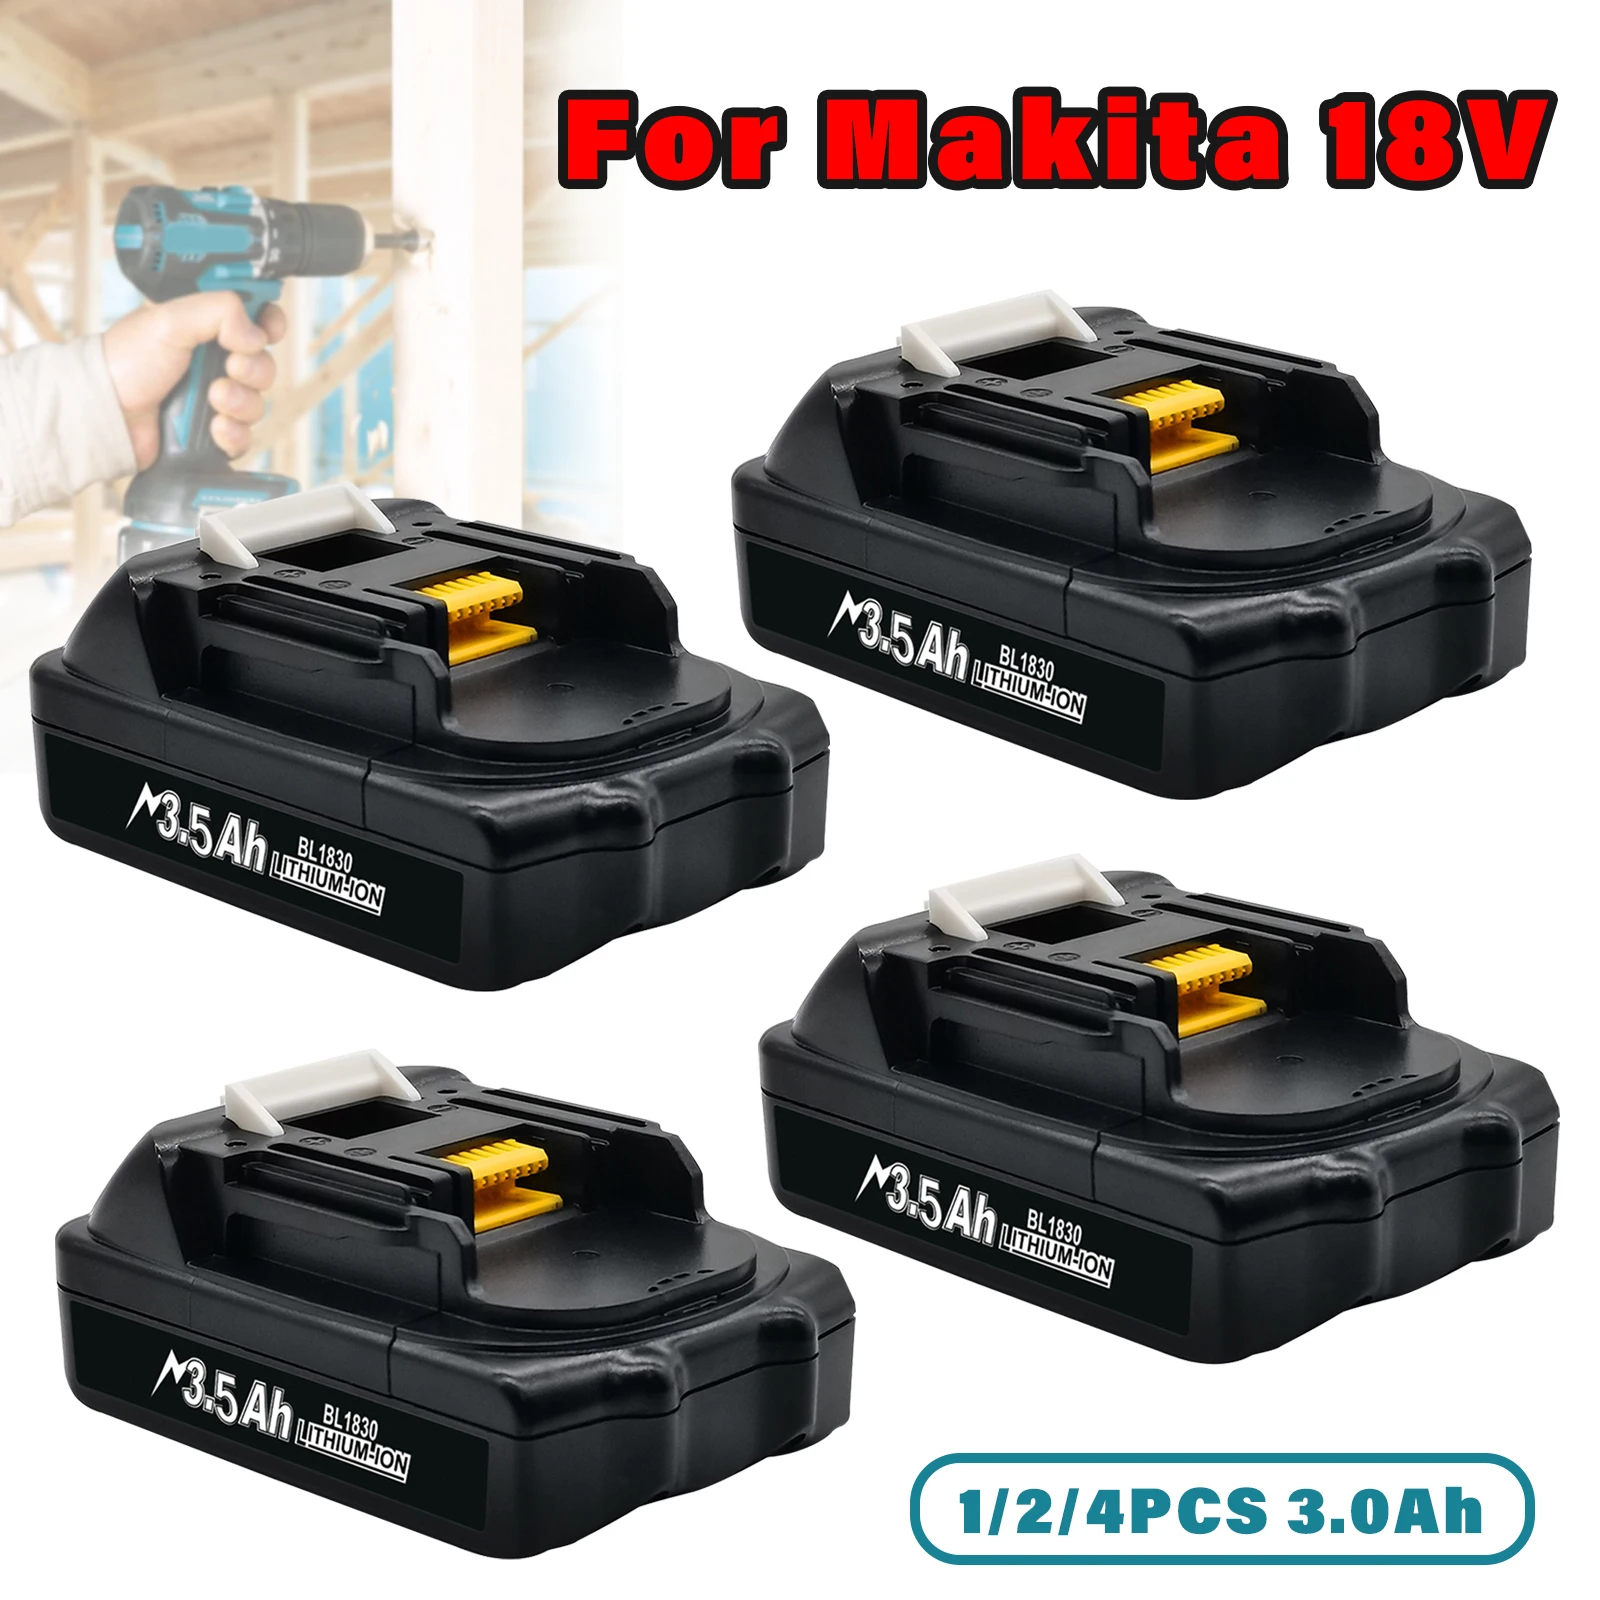 For Makita 18V Li-ion Battery To Replace for Makita G series